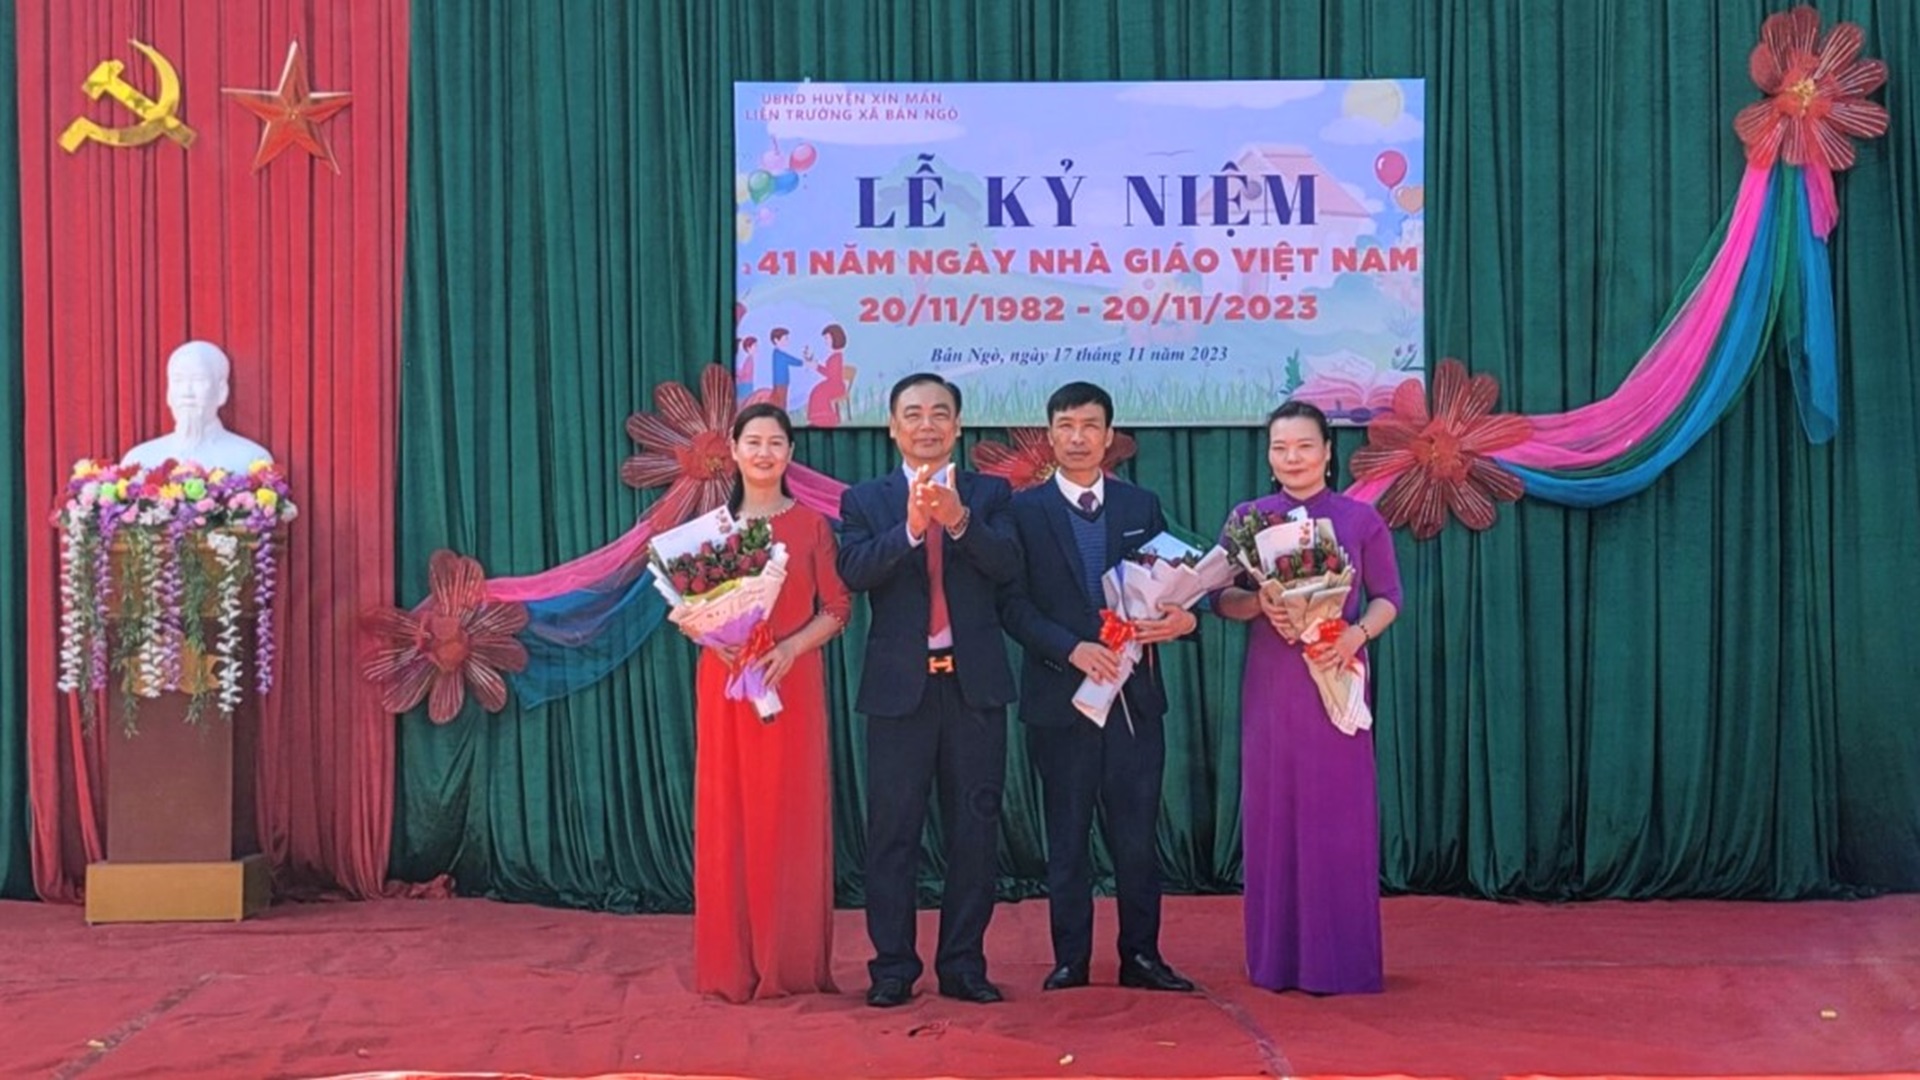 Liên trường xã Bản Ngò tổ chức Lễ kỷ niệm 41 năm ngày Nhà giáo Việt Nam